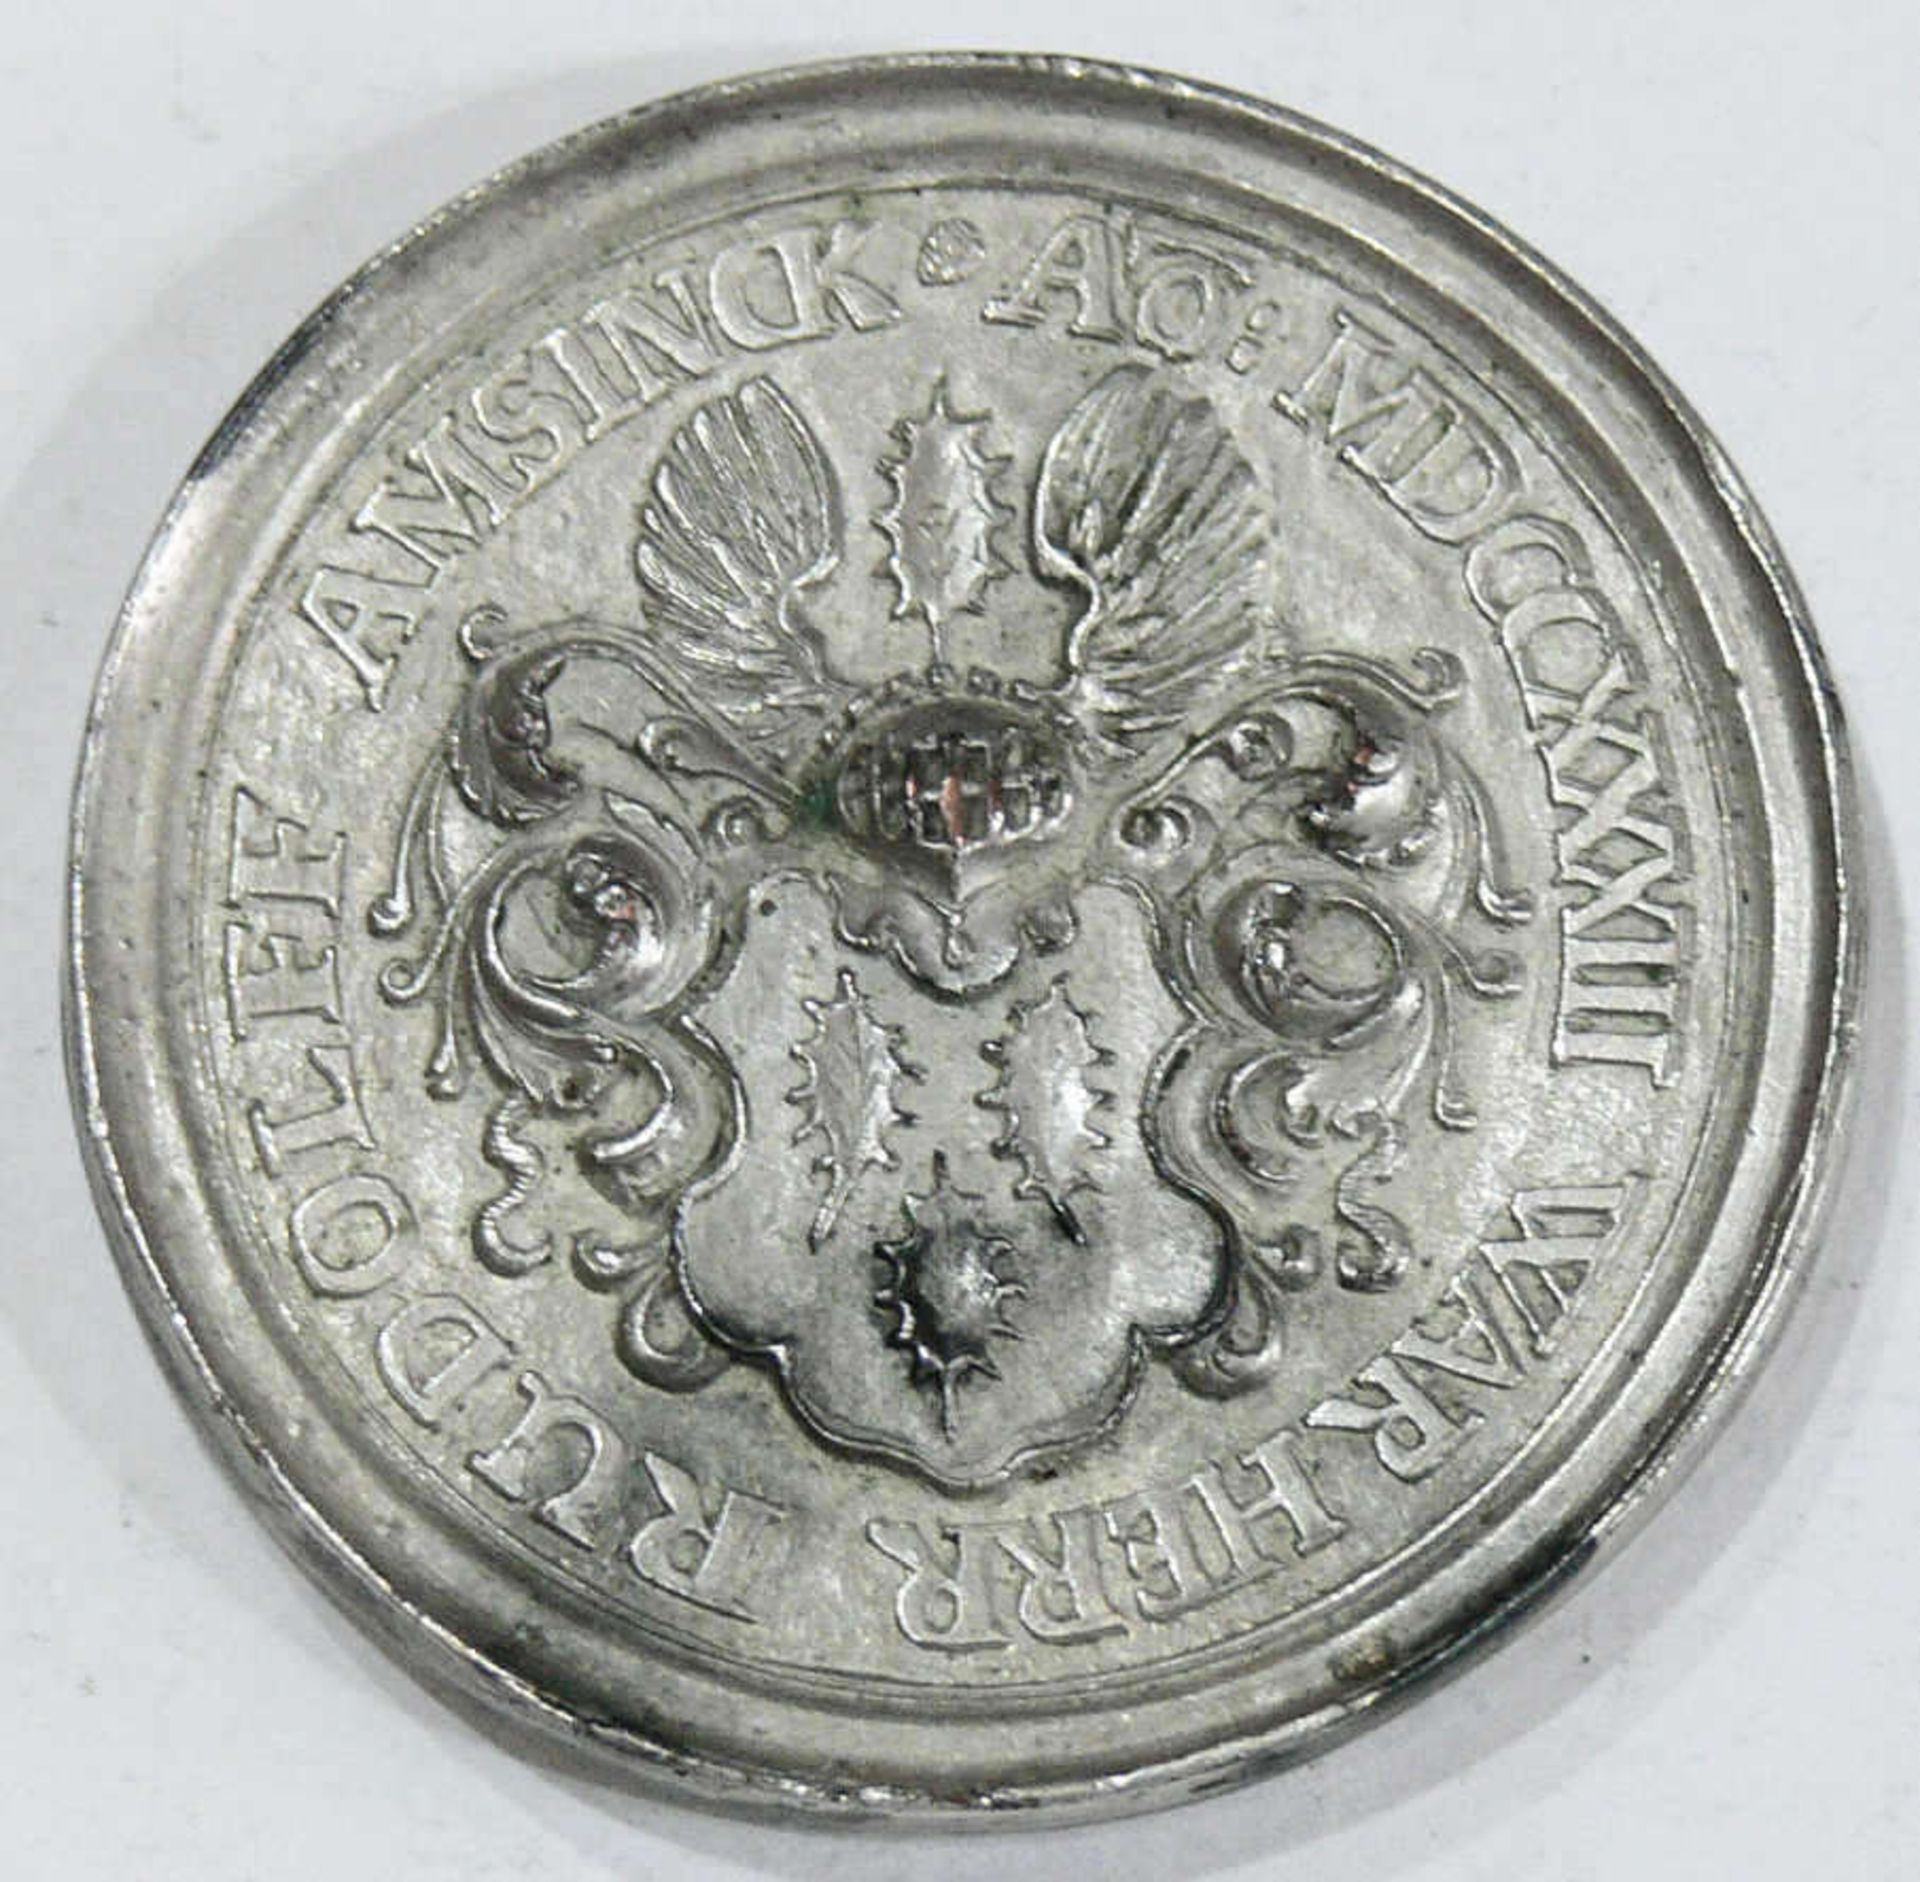 Medaille Hamburg - Rudolff Amsinck - ältester Gerichtsherr in Hamburg 1733. Metall. Durchmesser: ca. - Bild 2 aus 2